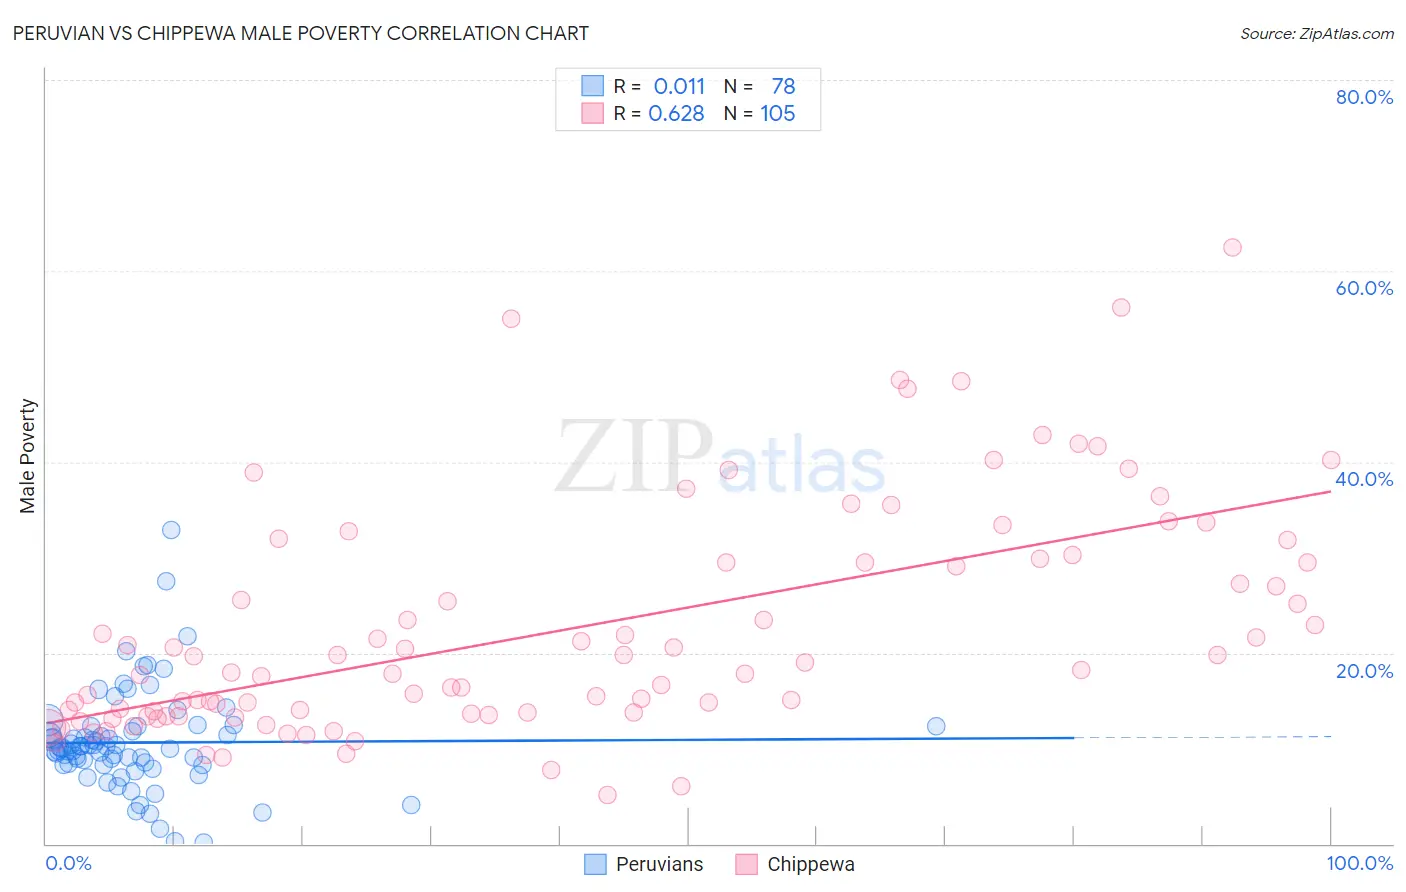 Peruvian vs Chippewa Male Poverty